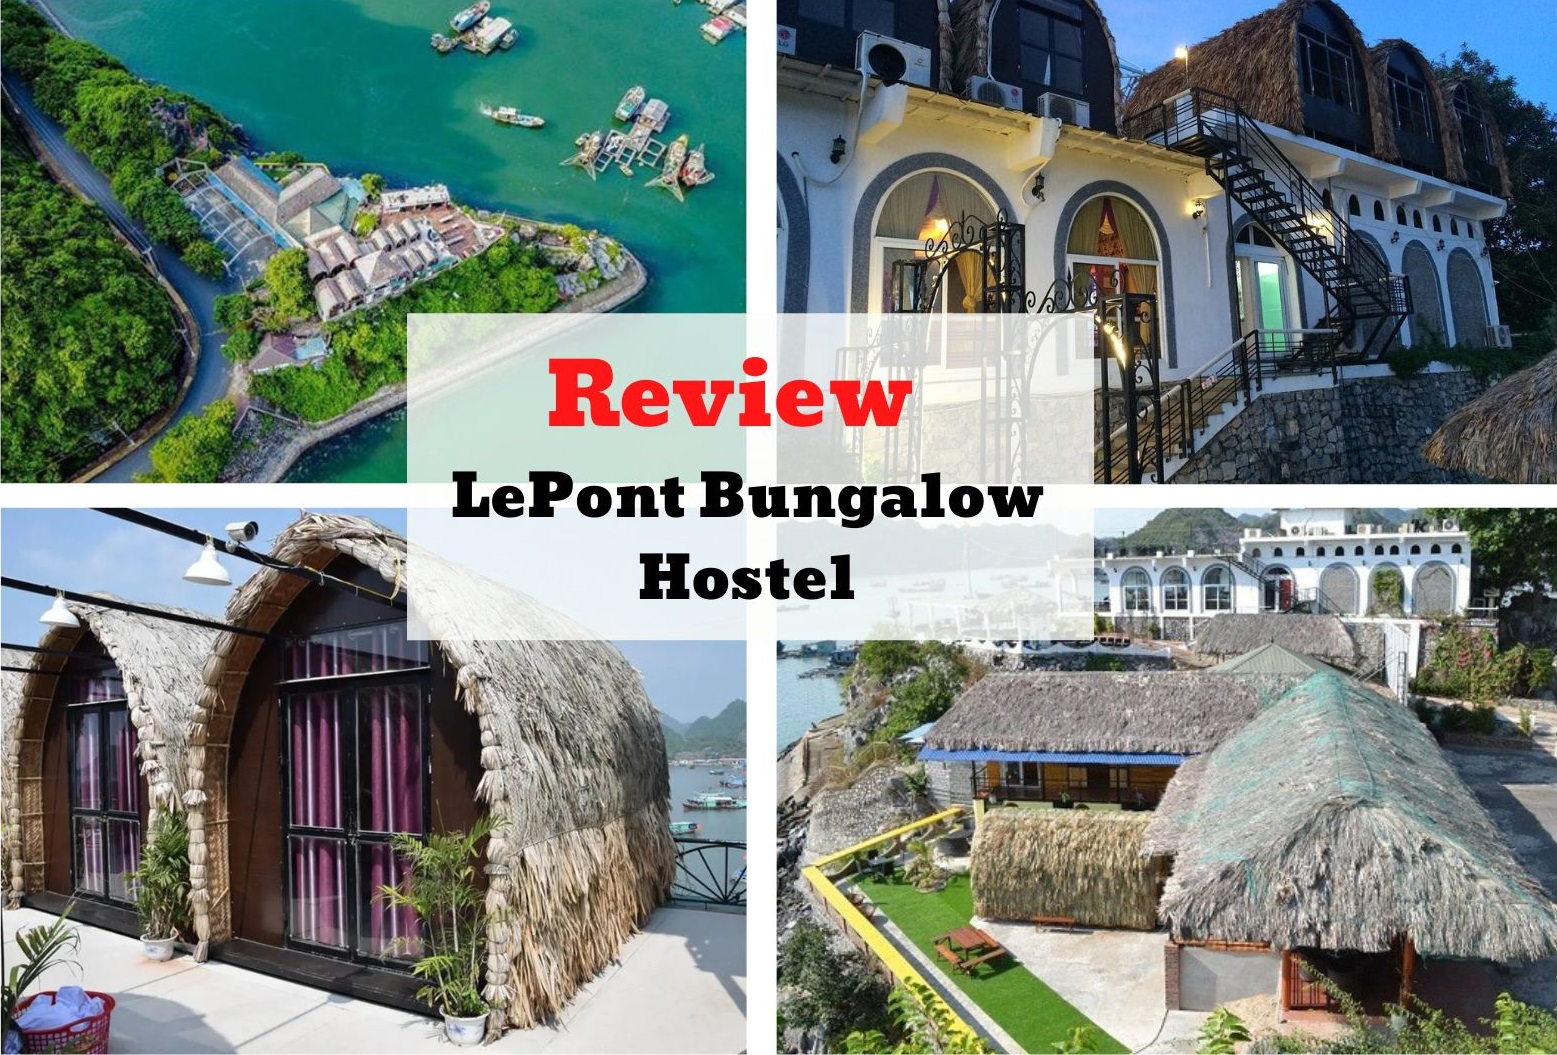 Review LePont Bungalow Hostel - Homestay ổ rơm độc đáo nhất đảo Cát Bà